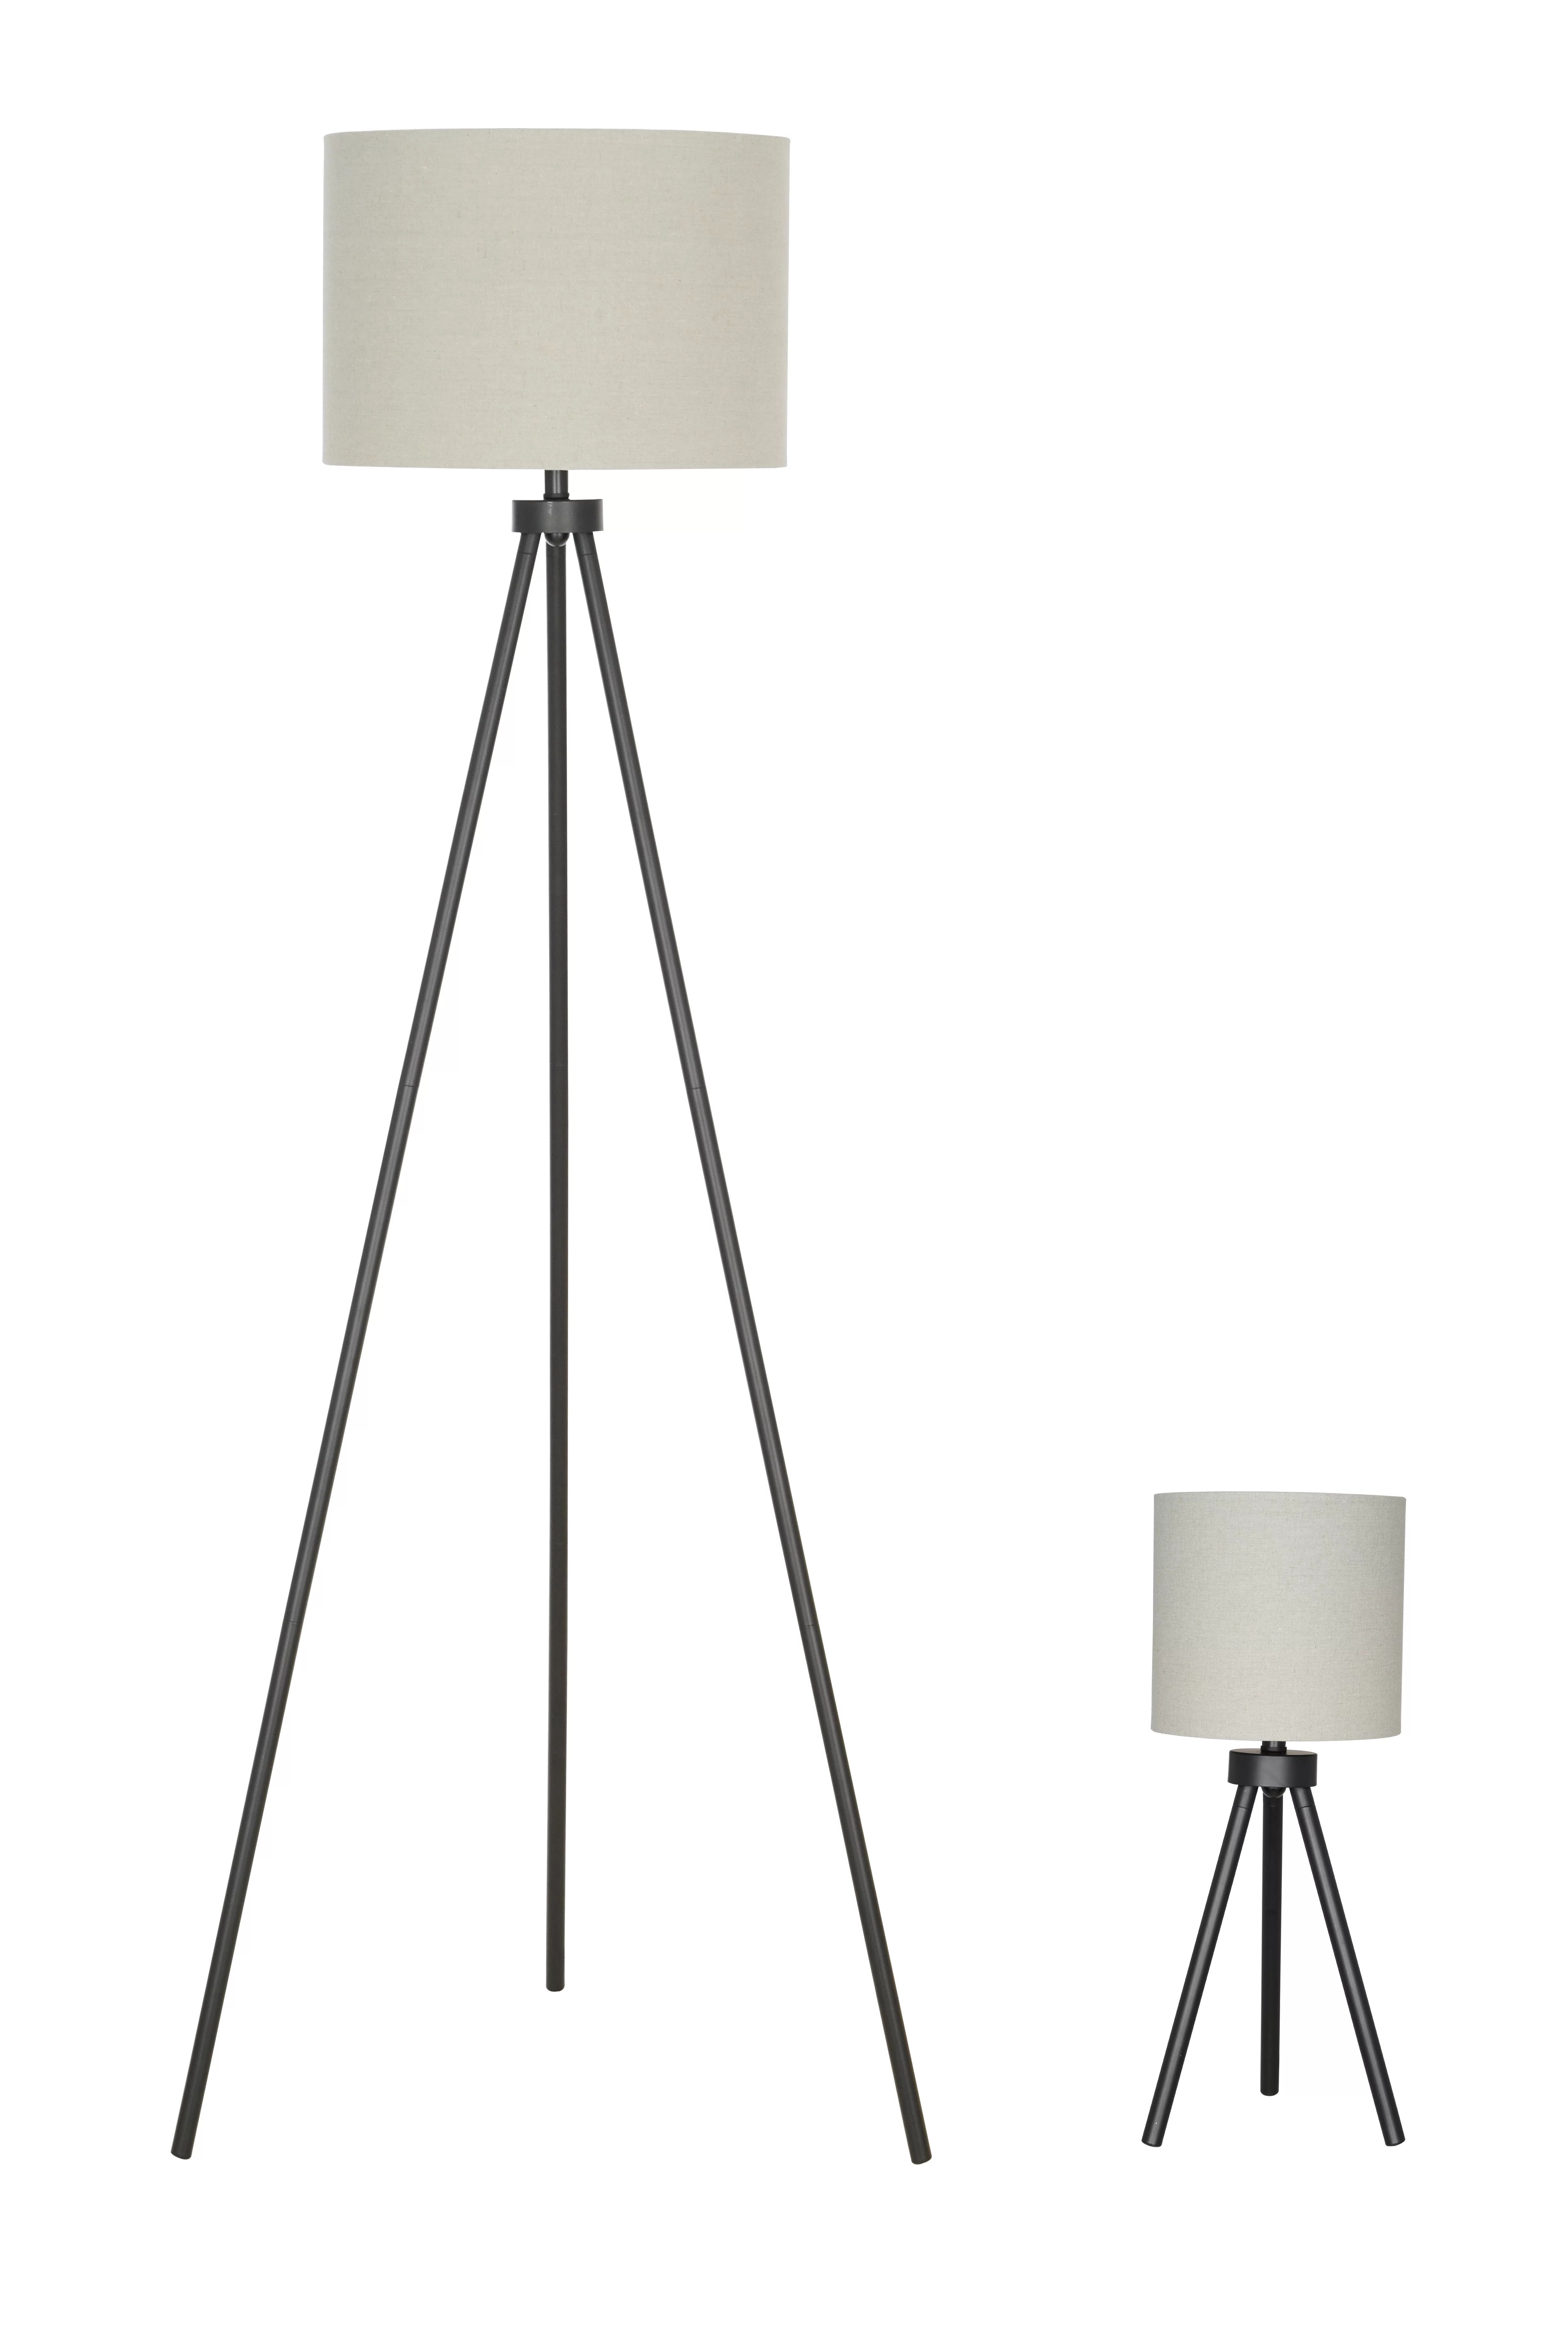 Better Homes & Gardens Modern Tripod Table & Floor Lamp Set, Black | Walmart (US)